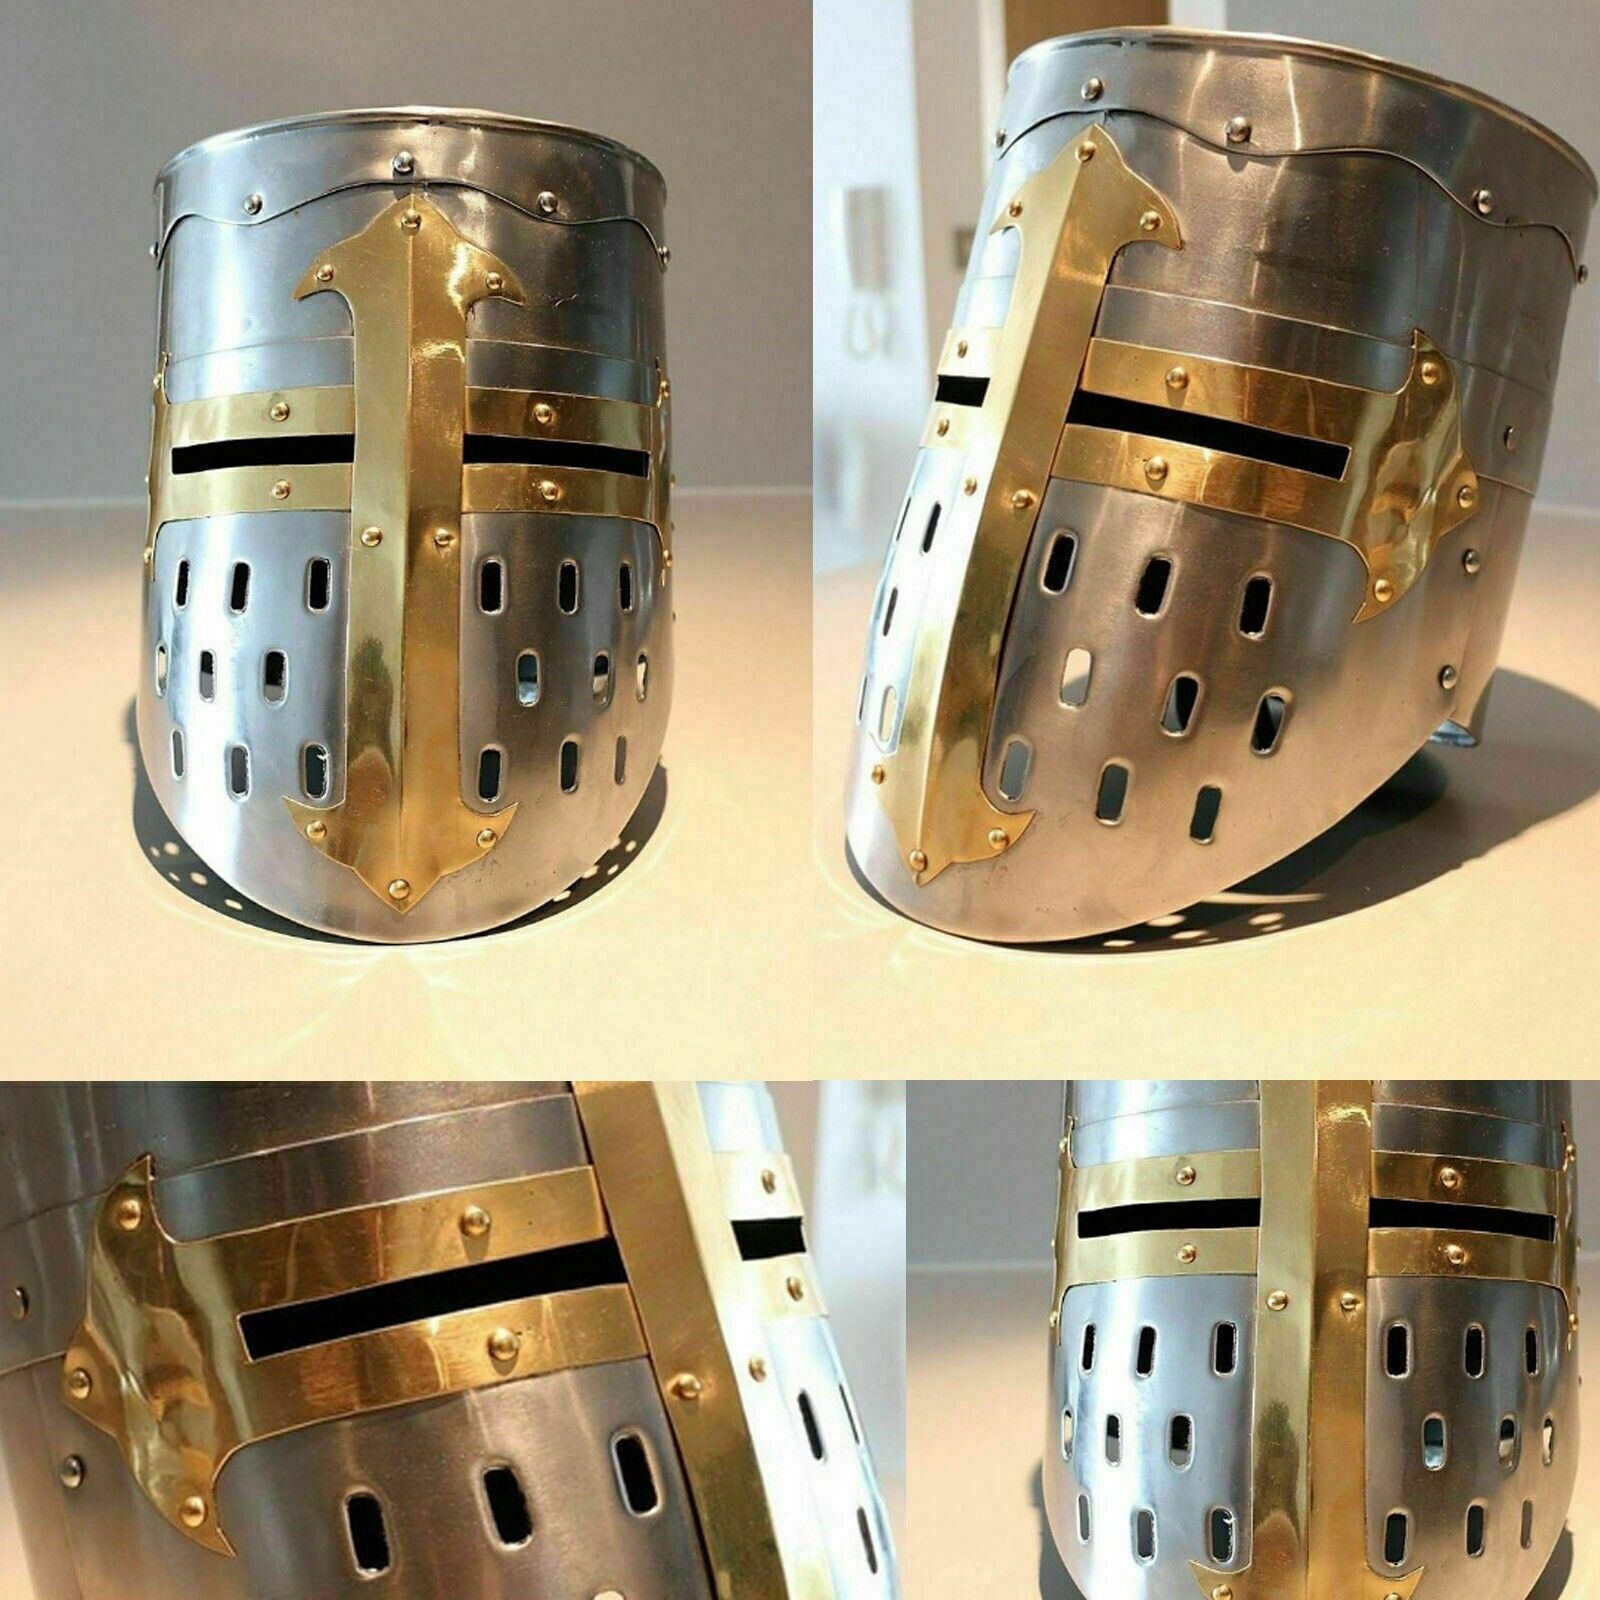 An Antiq Medieval Knights Helmet Viking Templar Crusader Helmet Best X-mas Gift